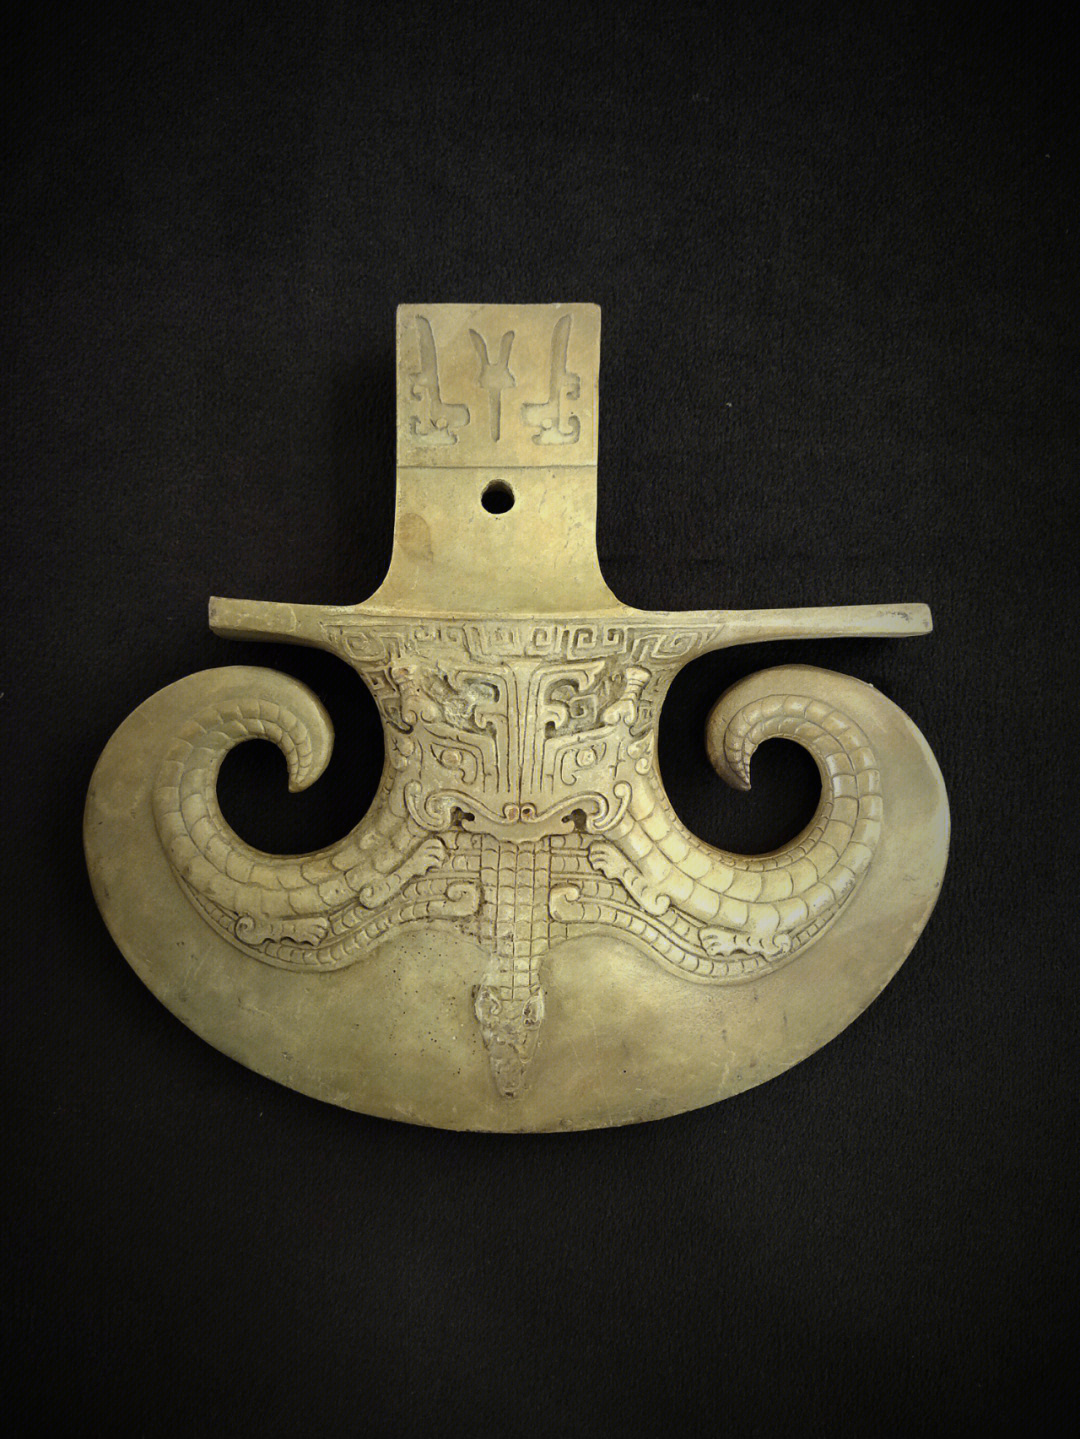 96青铜钺青铜钺是古代横用的兵器或刑具